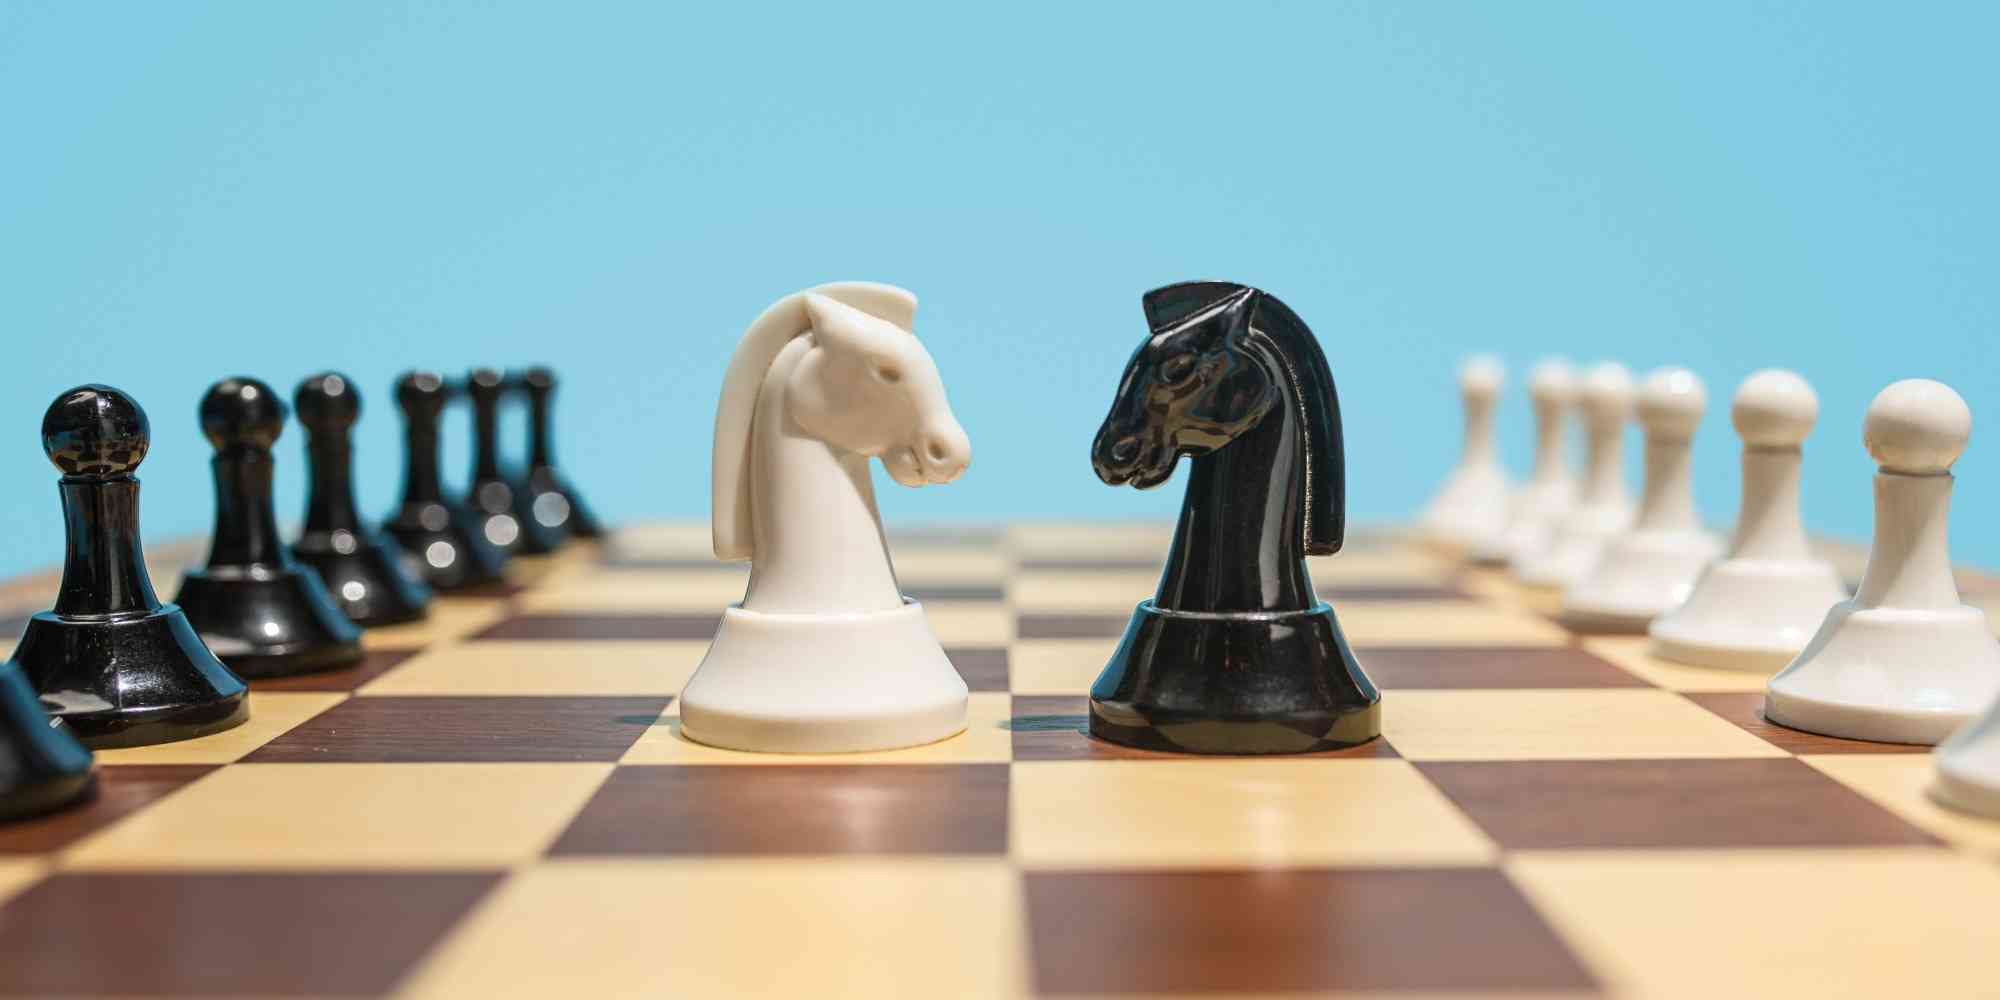 象棋是一幅棋盘，棋子黑白两色。马和象在棋盘上漫步，似乎准备挑战对方的王座。黑象站在白象的左边，似乎在暗示着它的力量与实力。然而，这只是一个短暂的瞬间，它们最终将面对一场决斗。